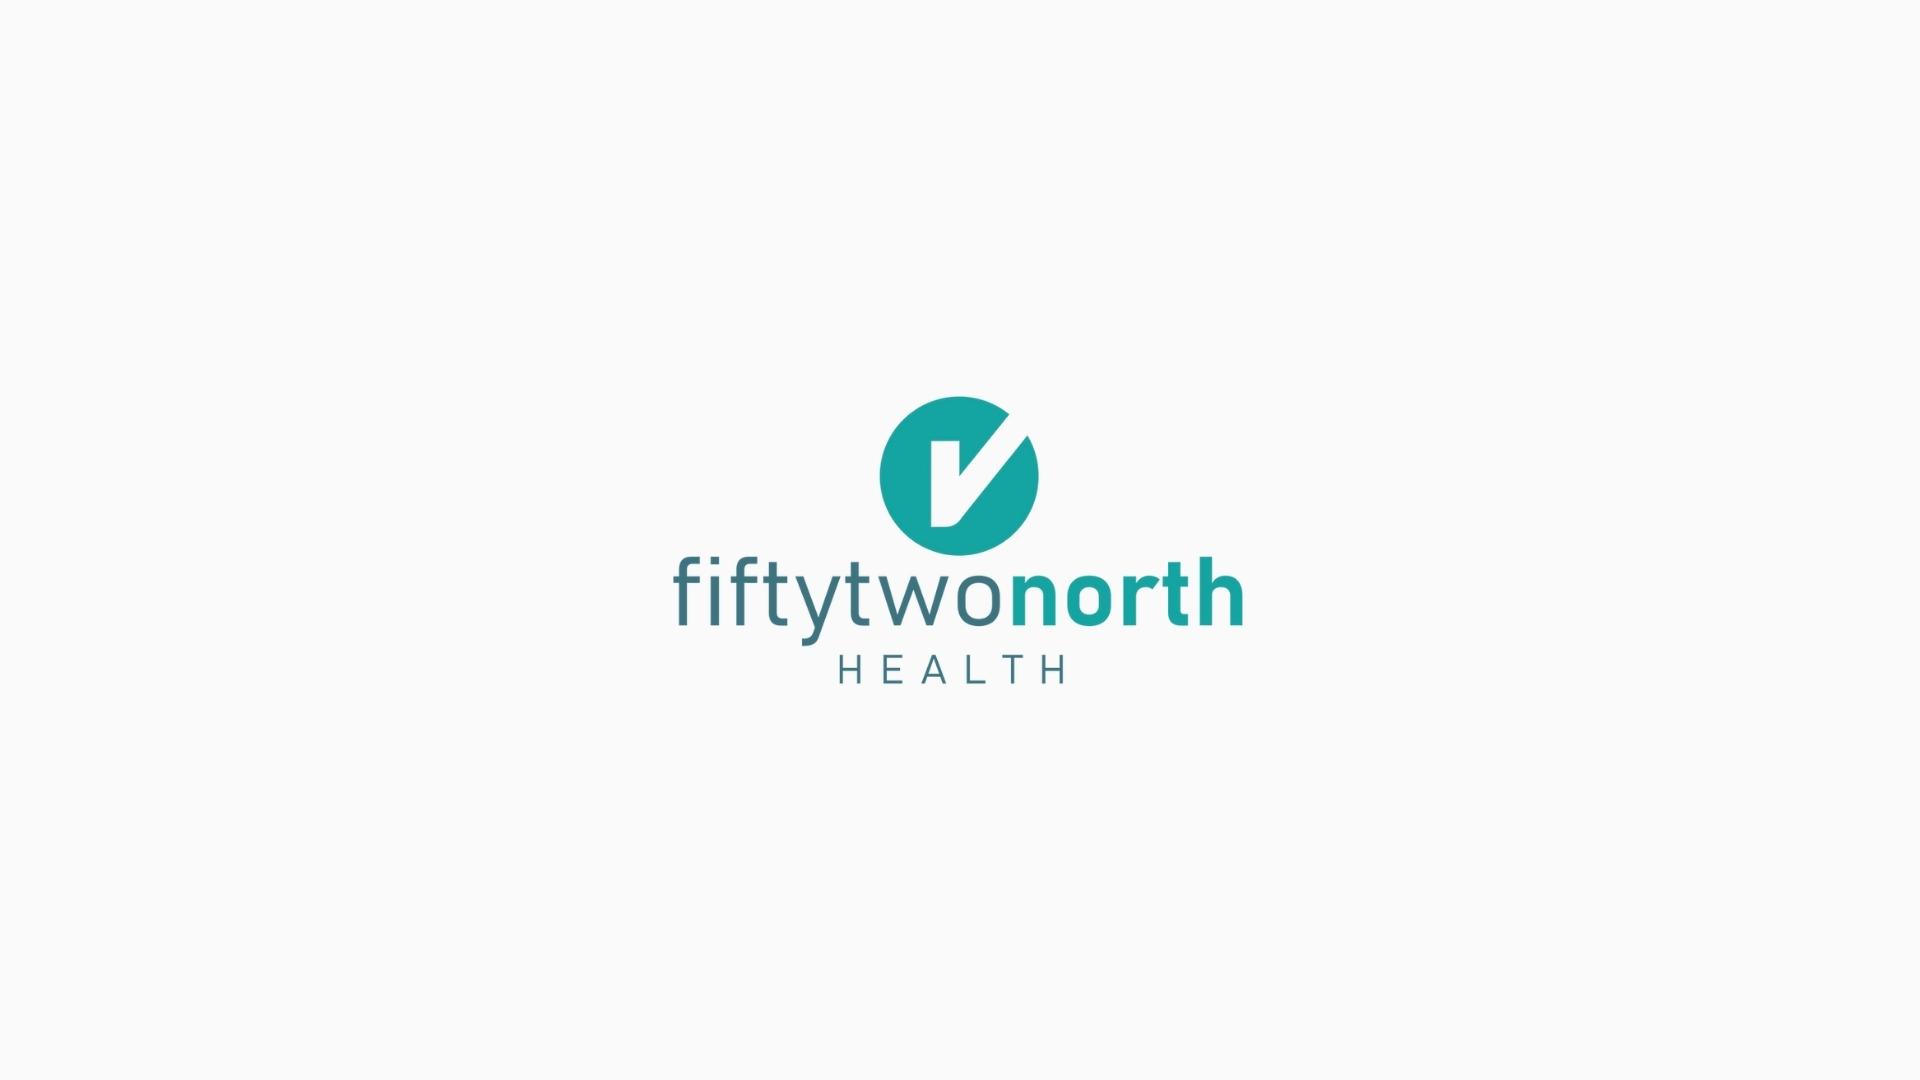 52 North Health